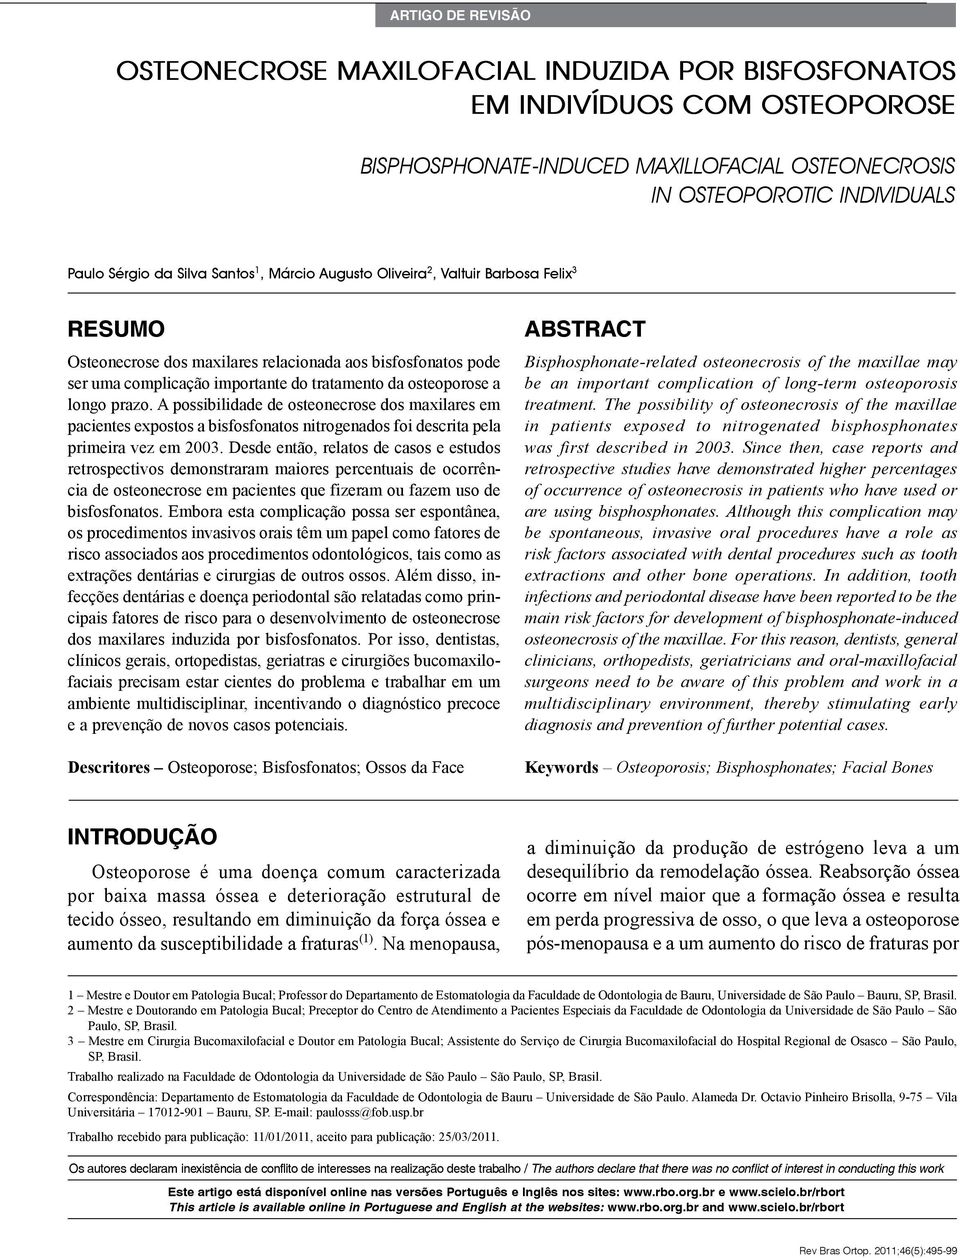 longo prazo. A possibilidade de osteonecrose dos maxilares em pacientes expostos a bisfosfonatos nitrogenados foi descrita pela primeira vez em 2003.